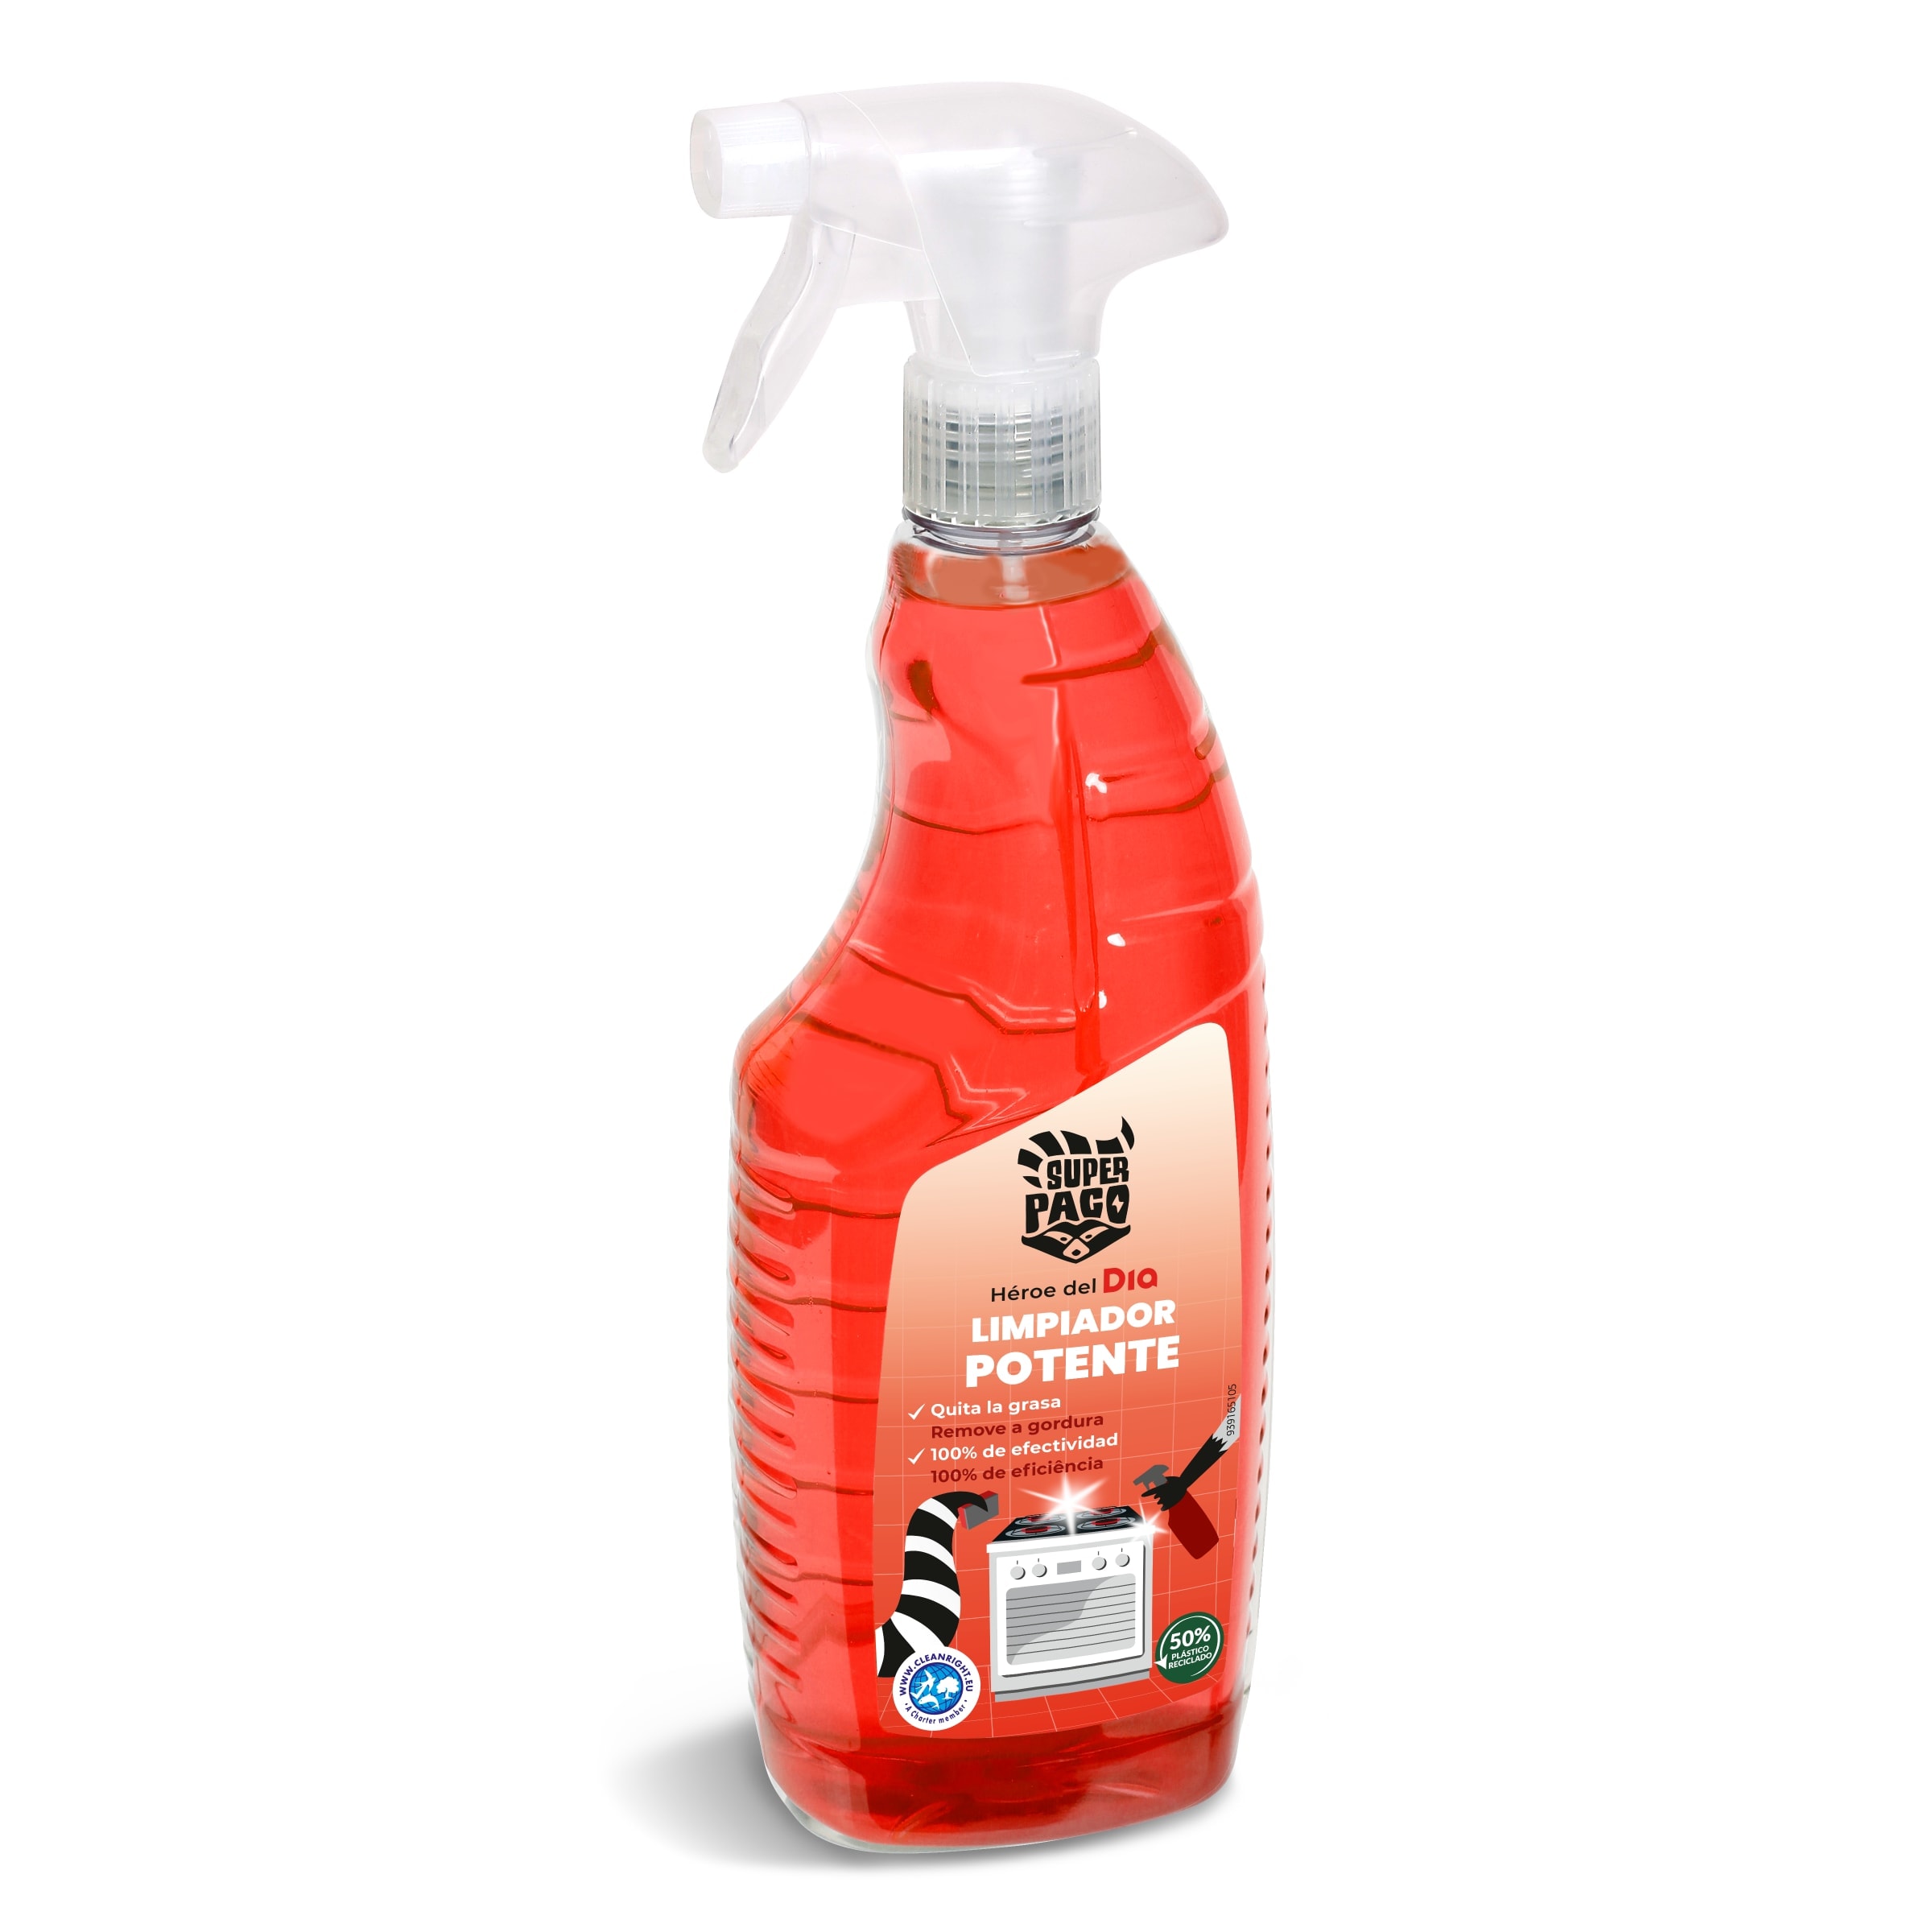 Limpiador potente quitagrasa Super Paco spray 750 ml - Supermercados DIA